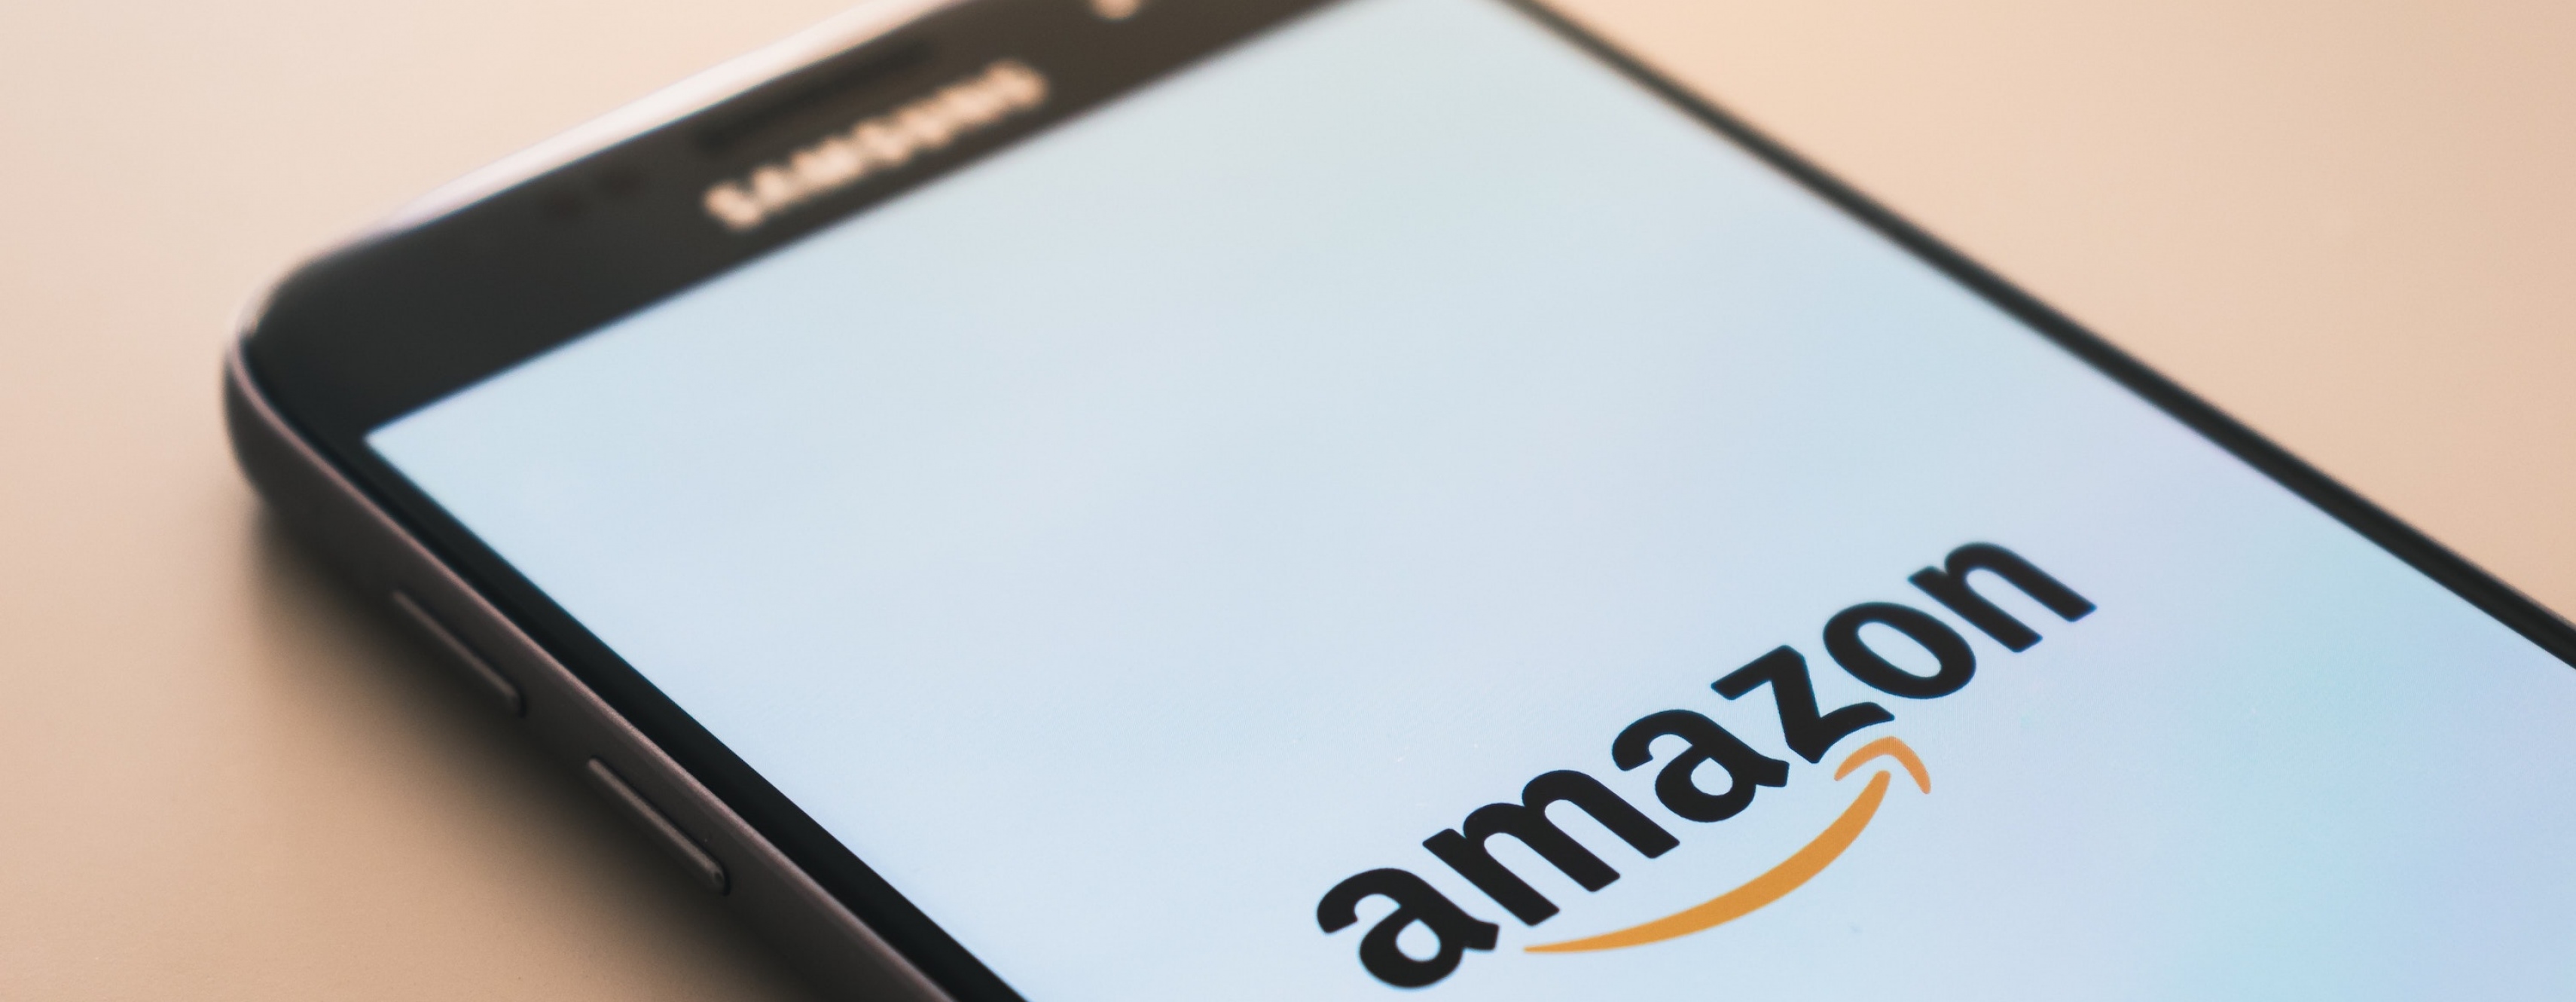 Verkopen via Amazon: Jouw producten voor de hele wereld